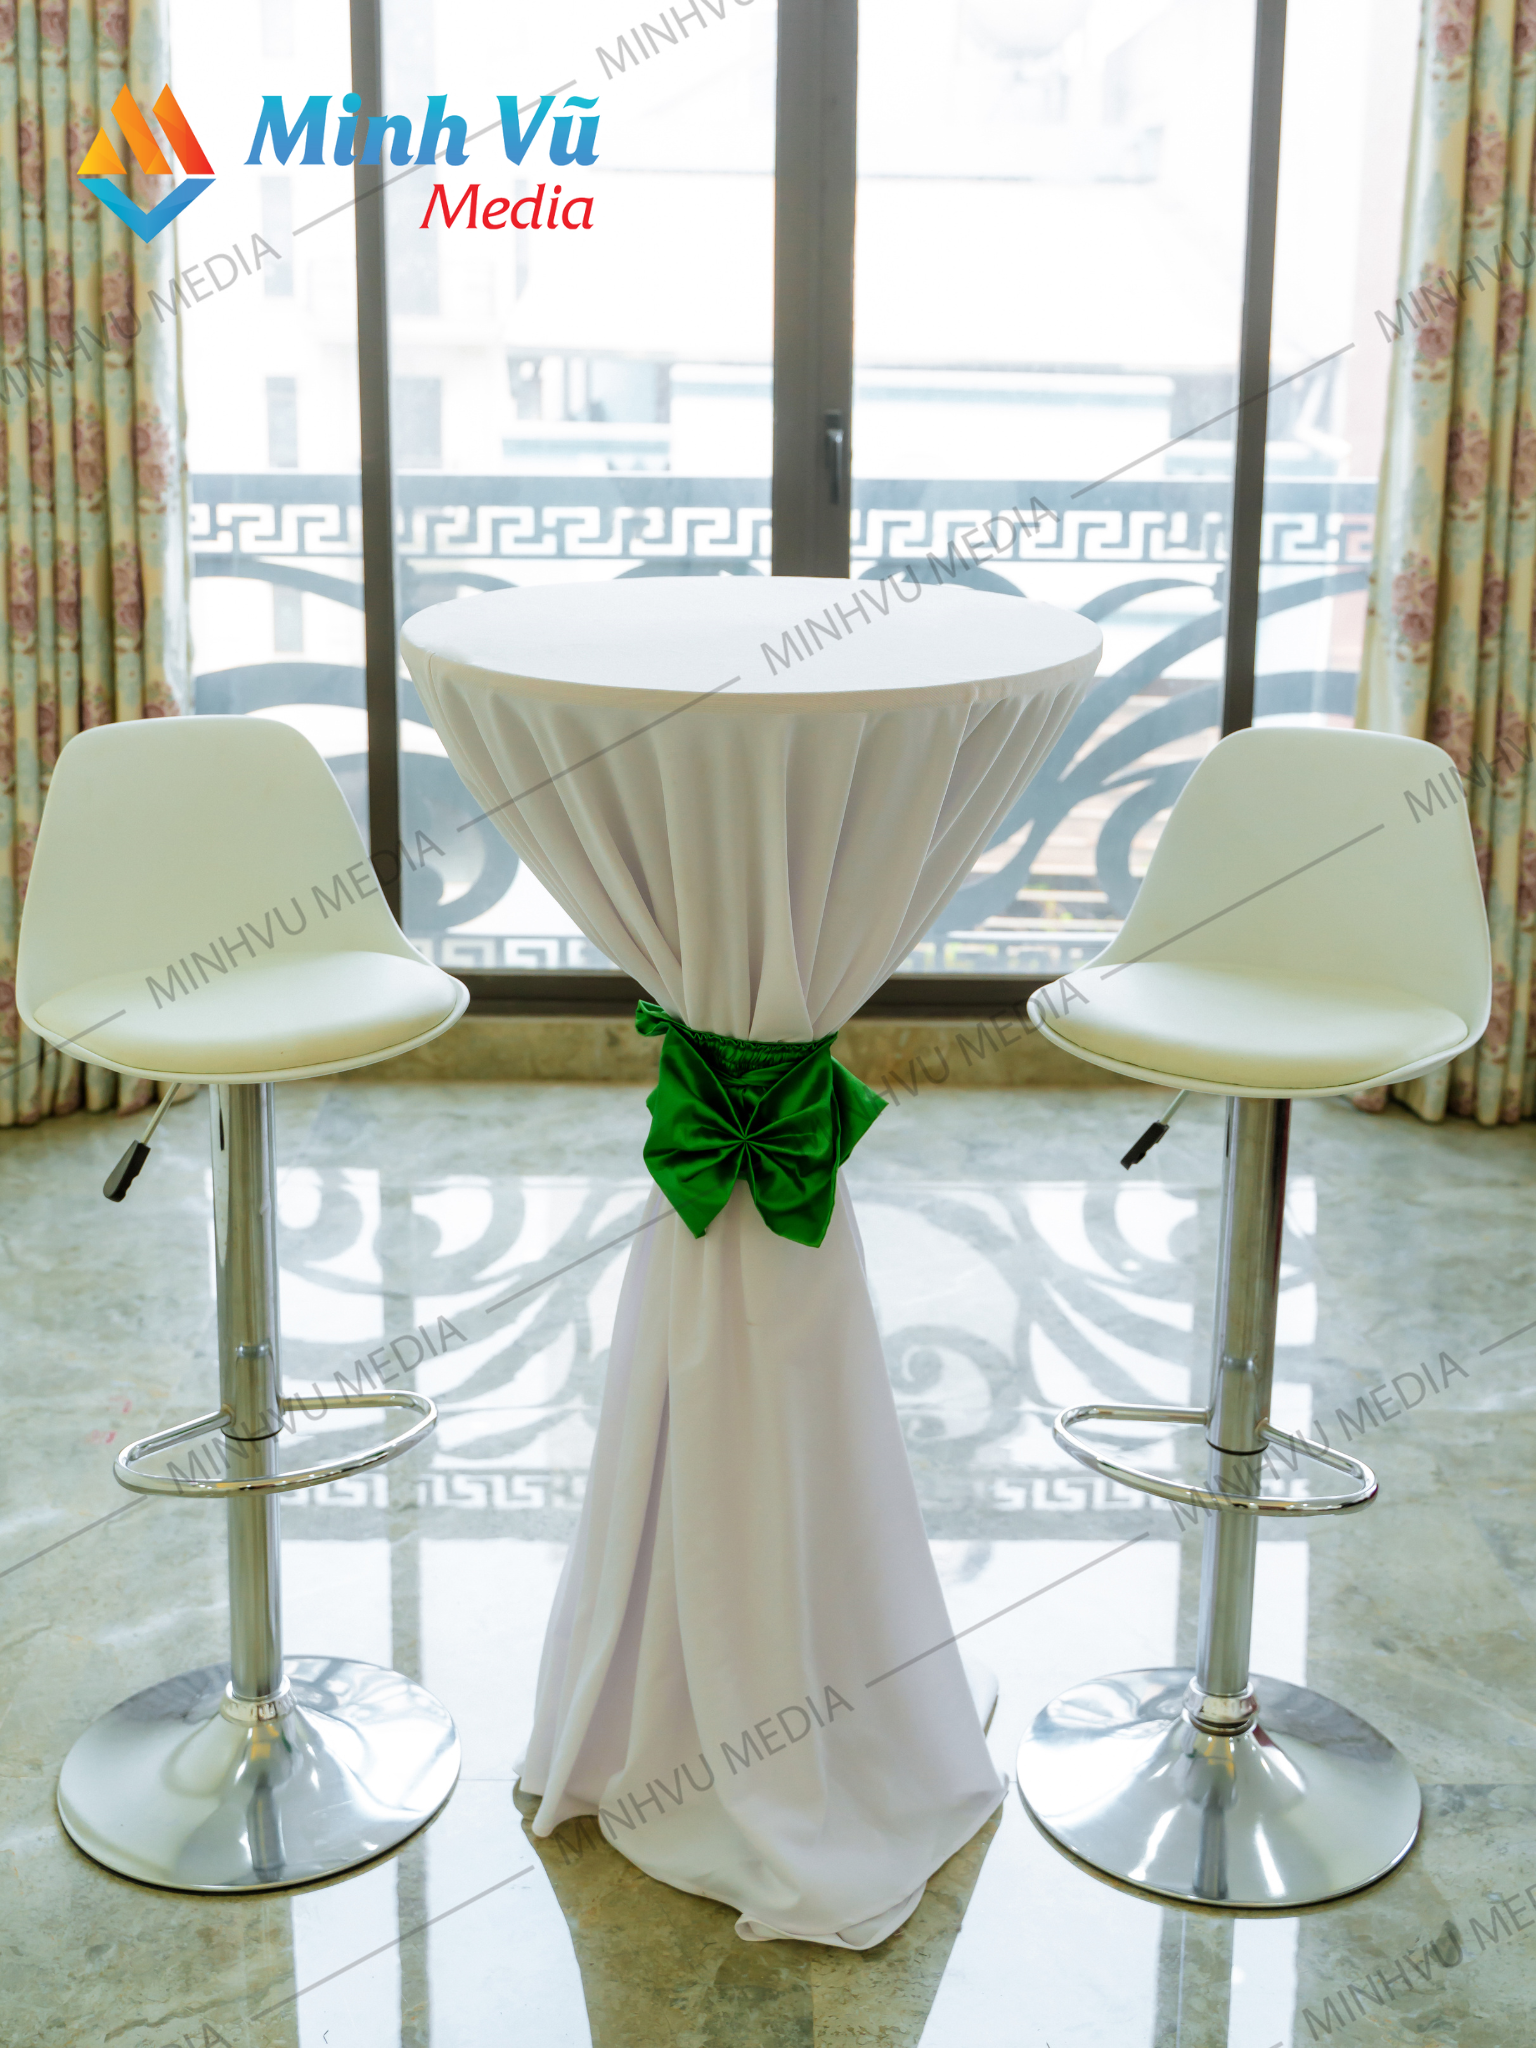 Minh Vũ Media cho thuê bàn bar trắng nơ xanh lá và ghế bar trắng